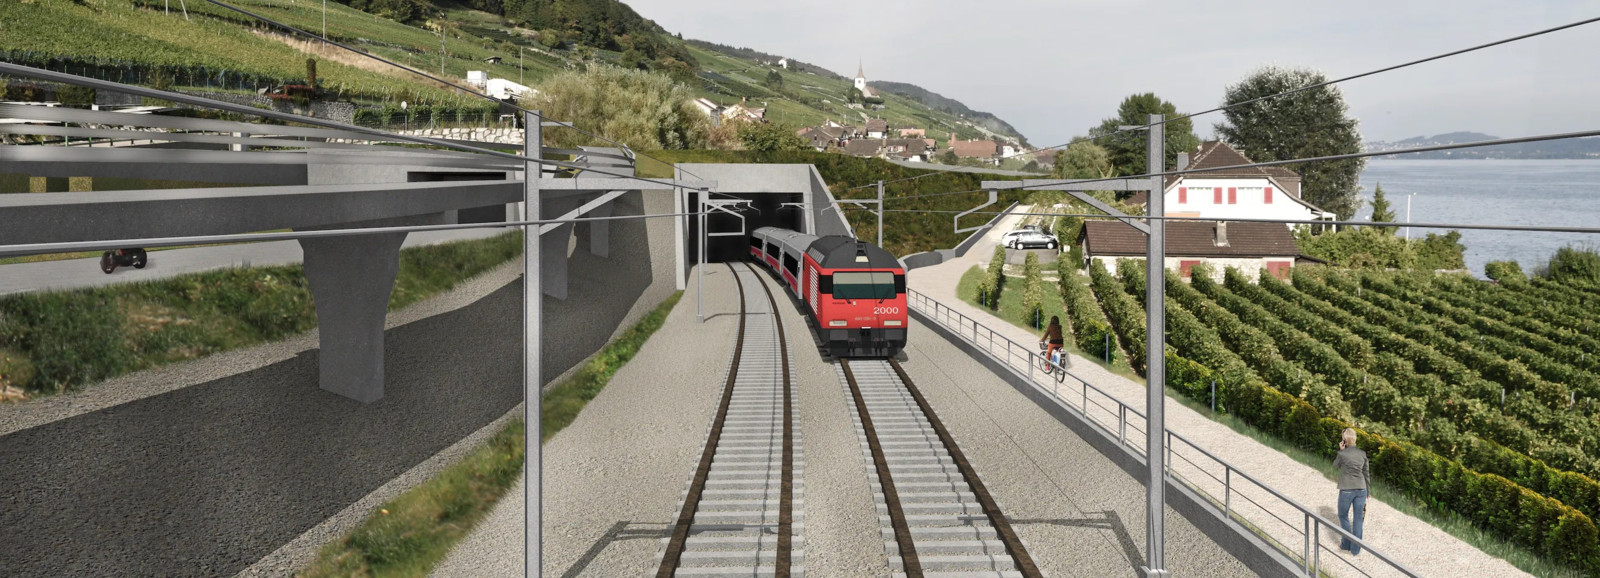 Von Implenia geführte ARGE erhält den Zuschlag für Los 2 «Tunnel Ligerz» im Rahmen des Doppelspurausbaus Ligerz-Twann